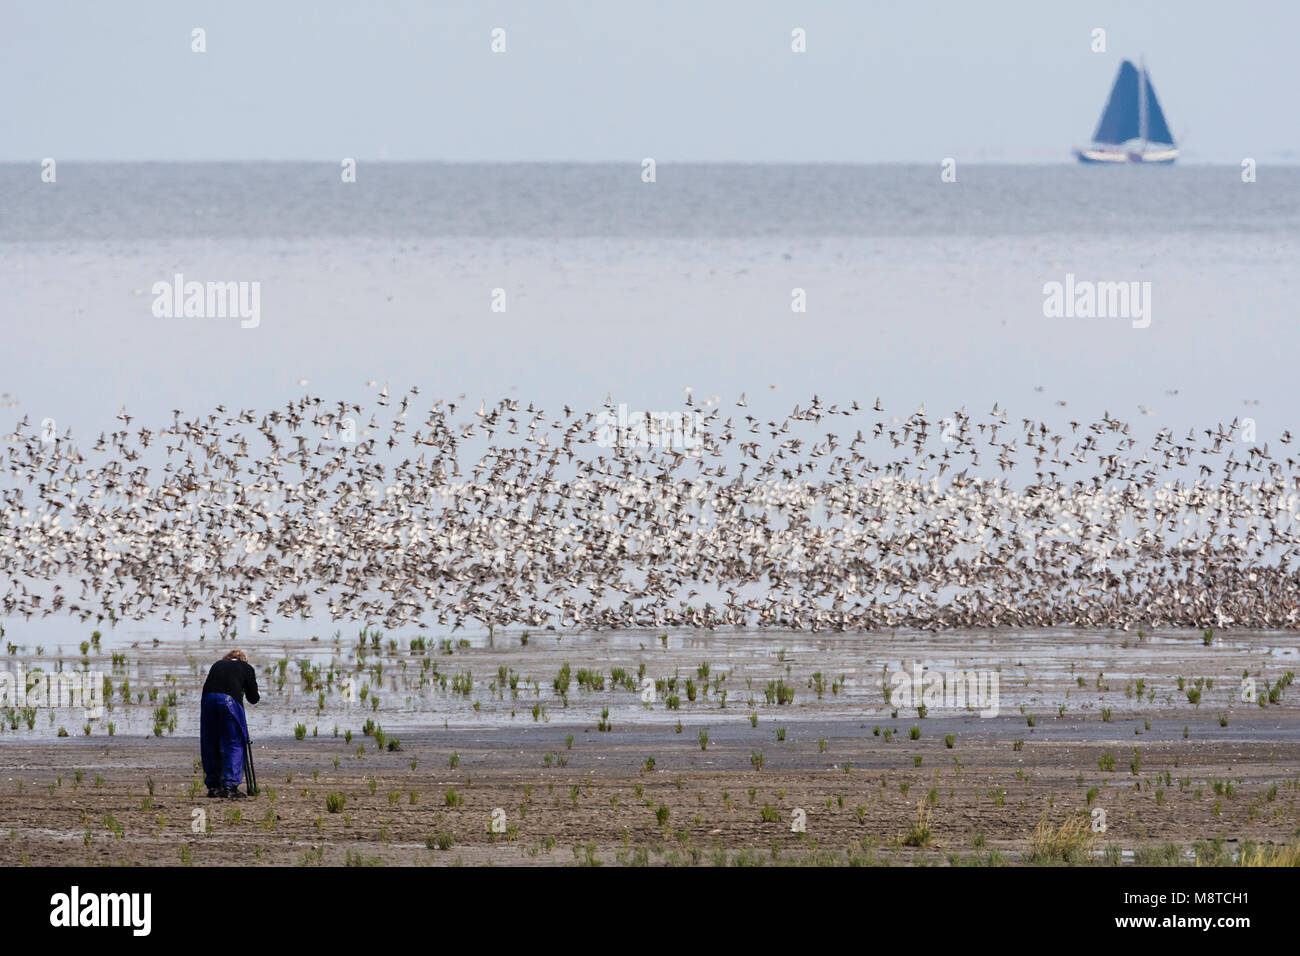 Vrouw fotografeert een zwerm opvliegende vogels; Woman photographing a flock of birds taking off Stock Photo